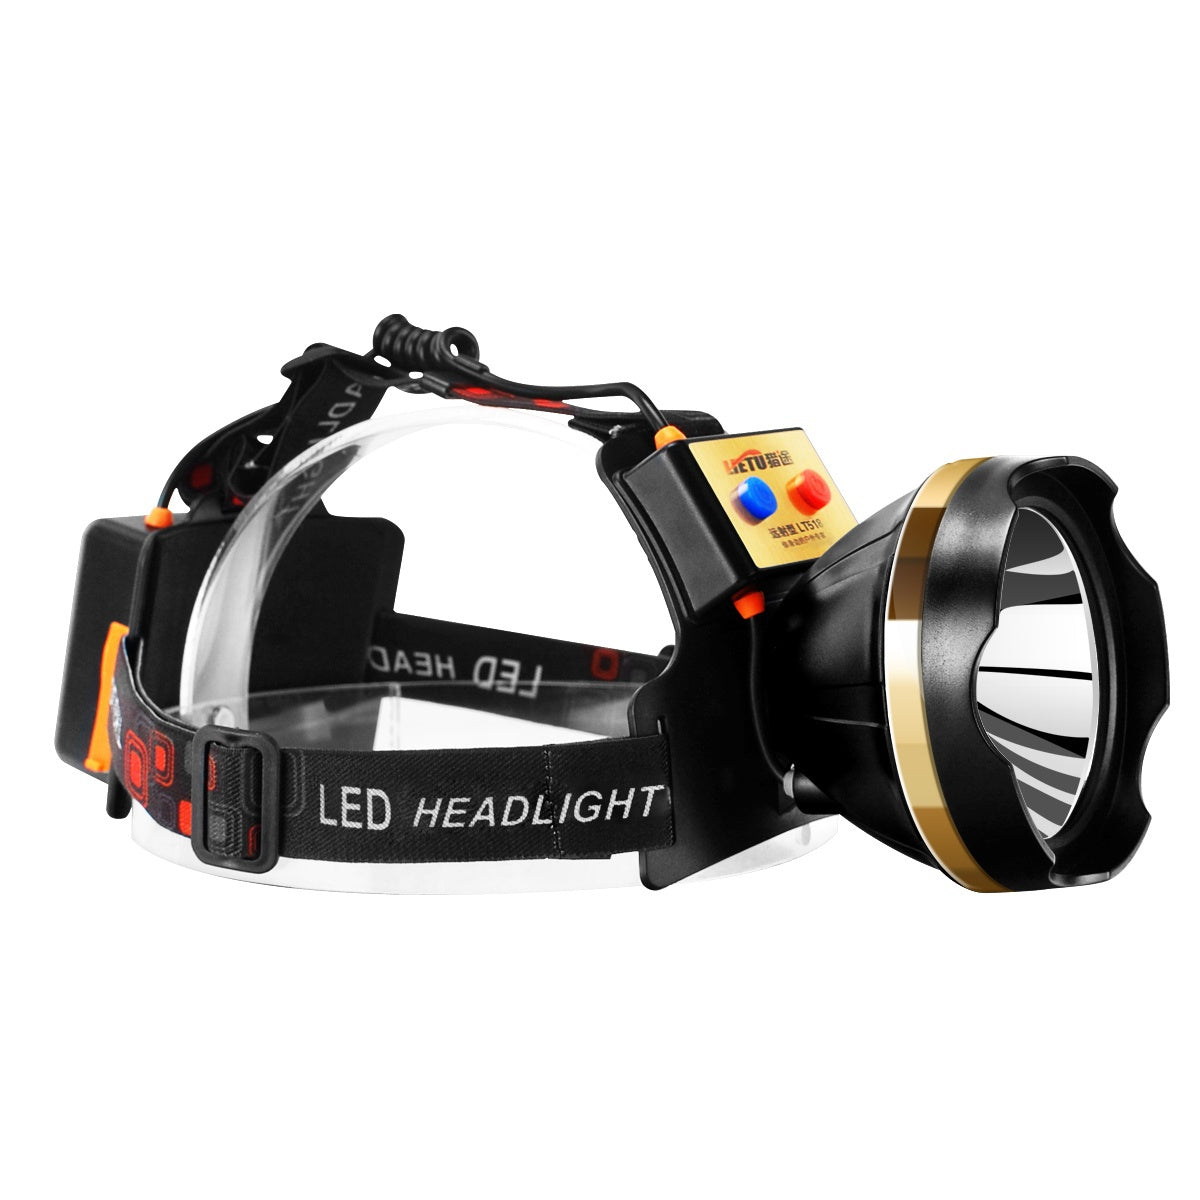 Linterna frontal LED, linterna recargable para exteriores, para acampar, cazar y pescar